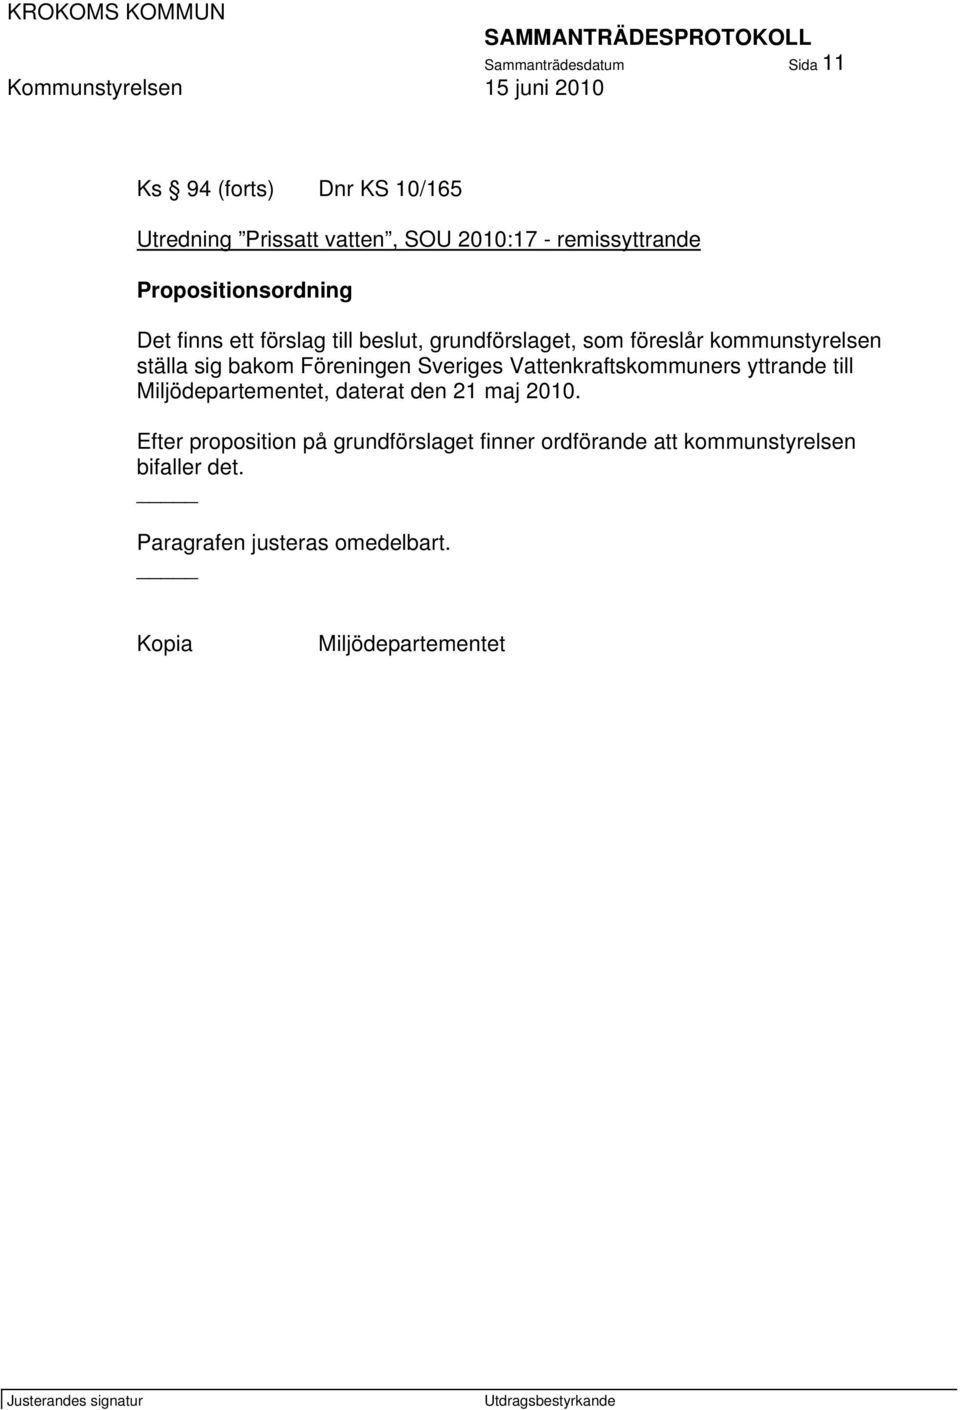 Föreningen Sveriges Vattenkraftskommuners yttrande till Miljödepartementet, daterat den 21 maj 2010.